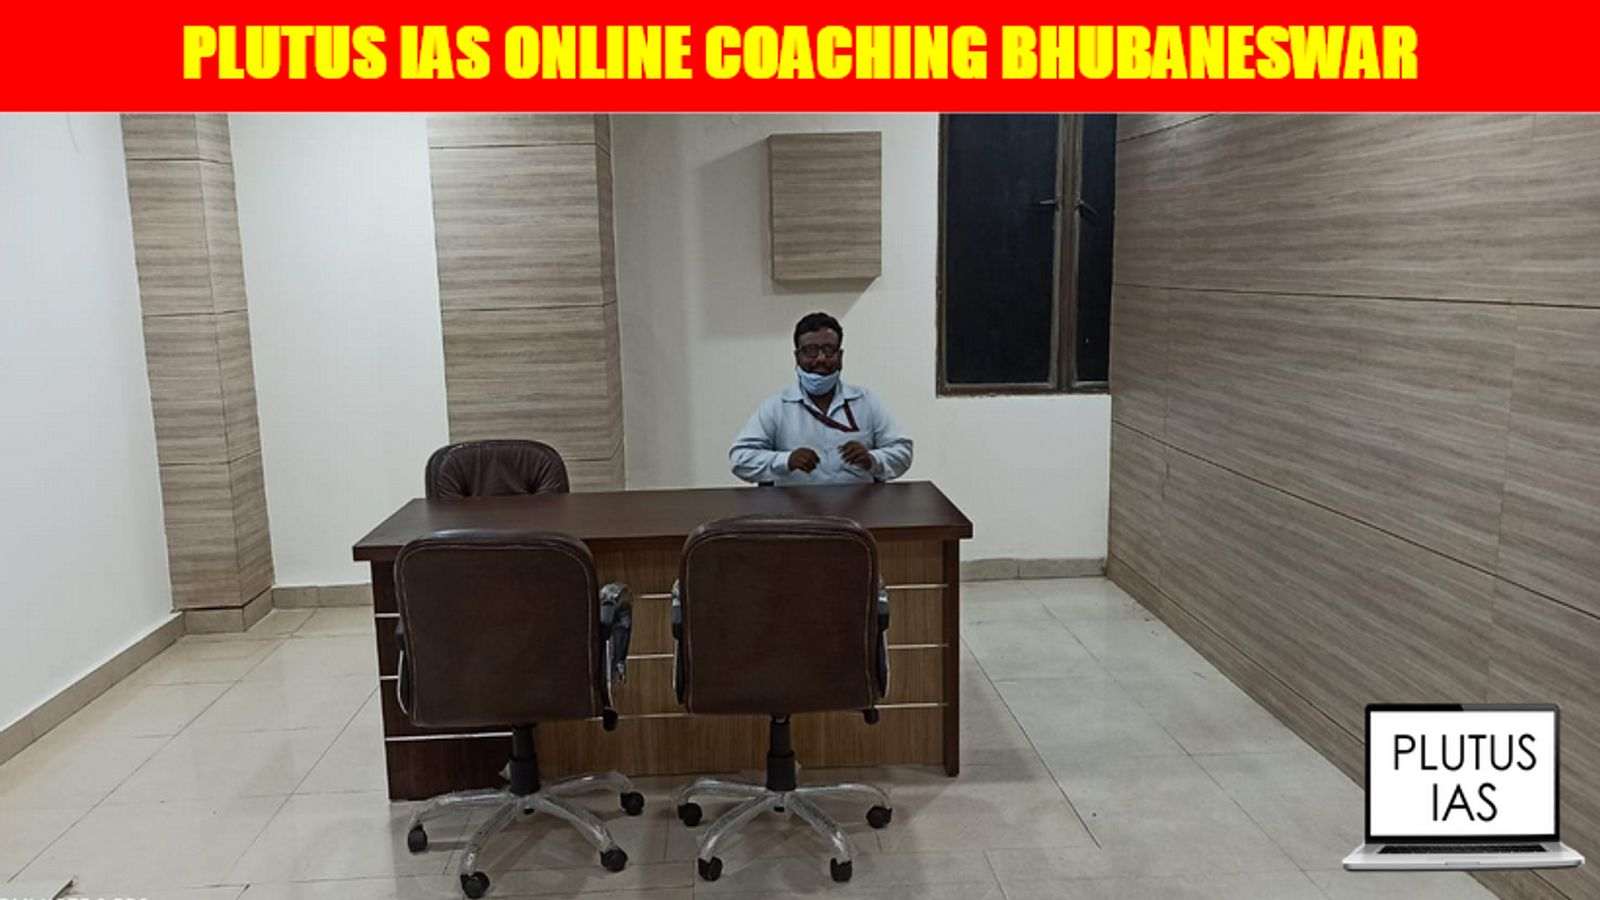 Plutus IAS Online Coaching Bhubaneswar